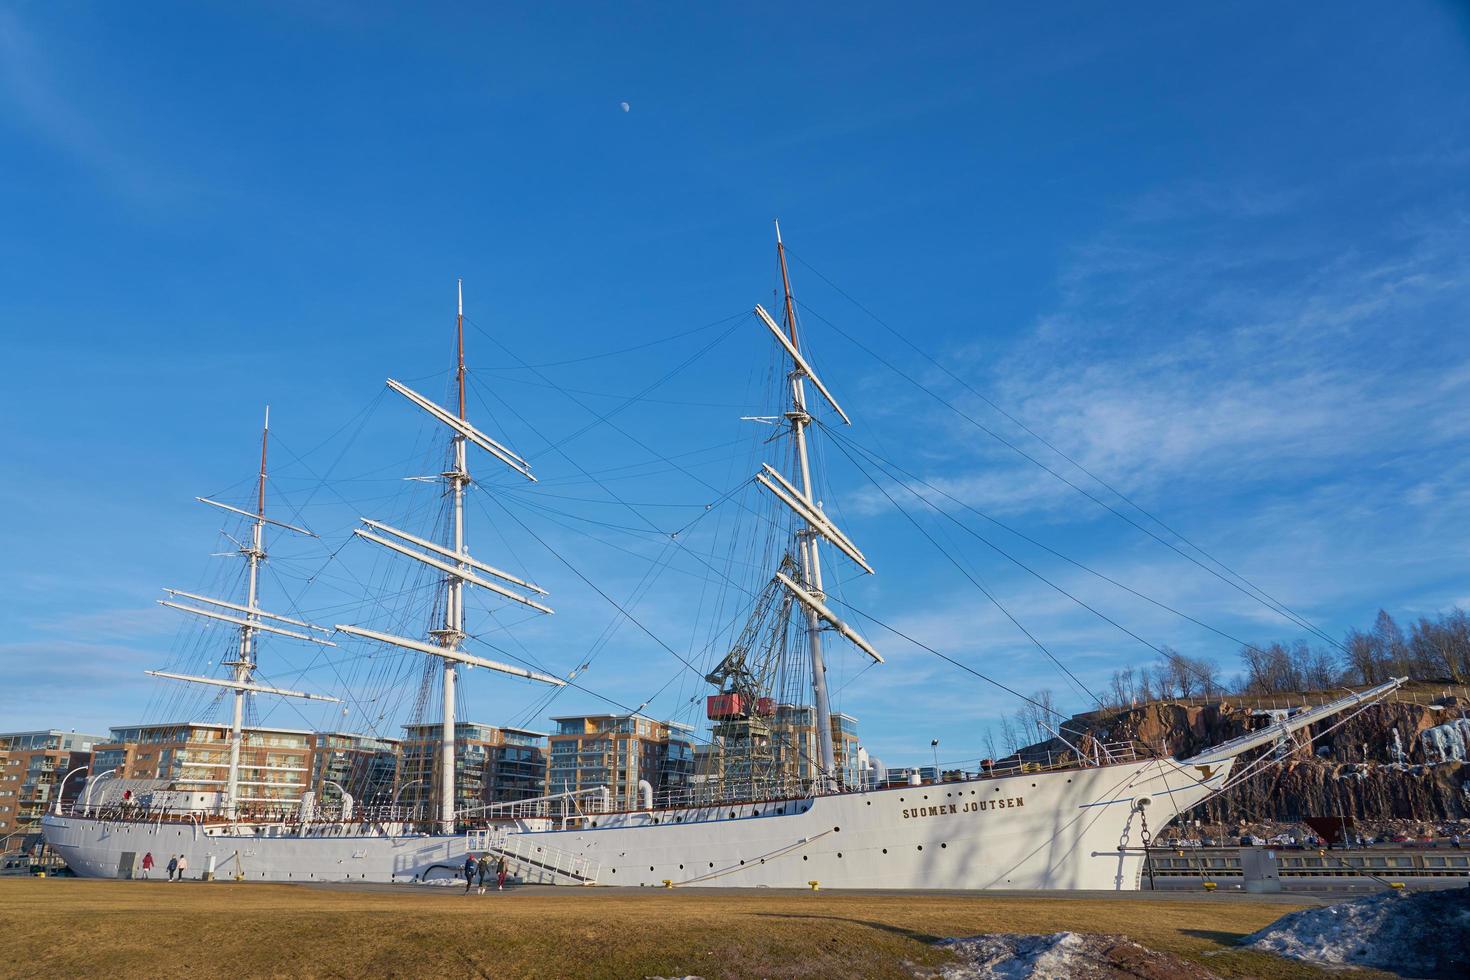 turku, finlândia, 23 de março de 2021 - navio finlandês cisne suomen joutsen foto